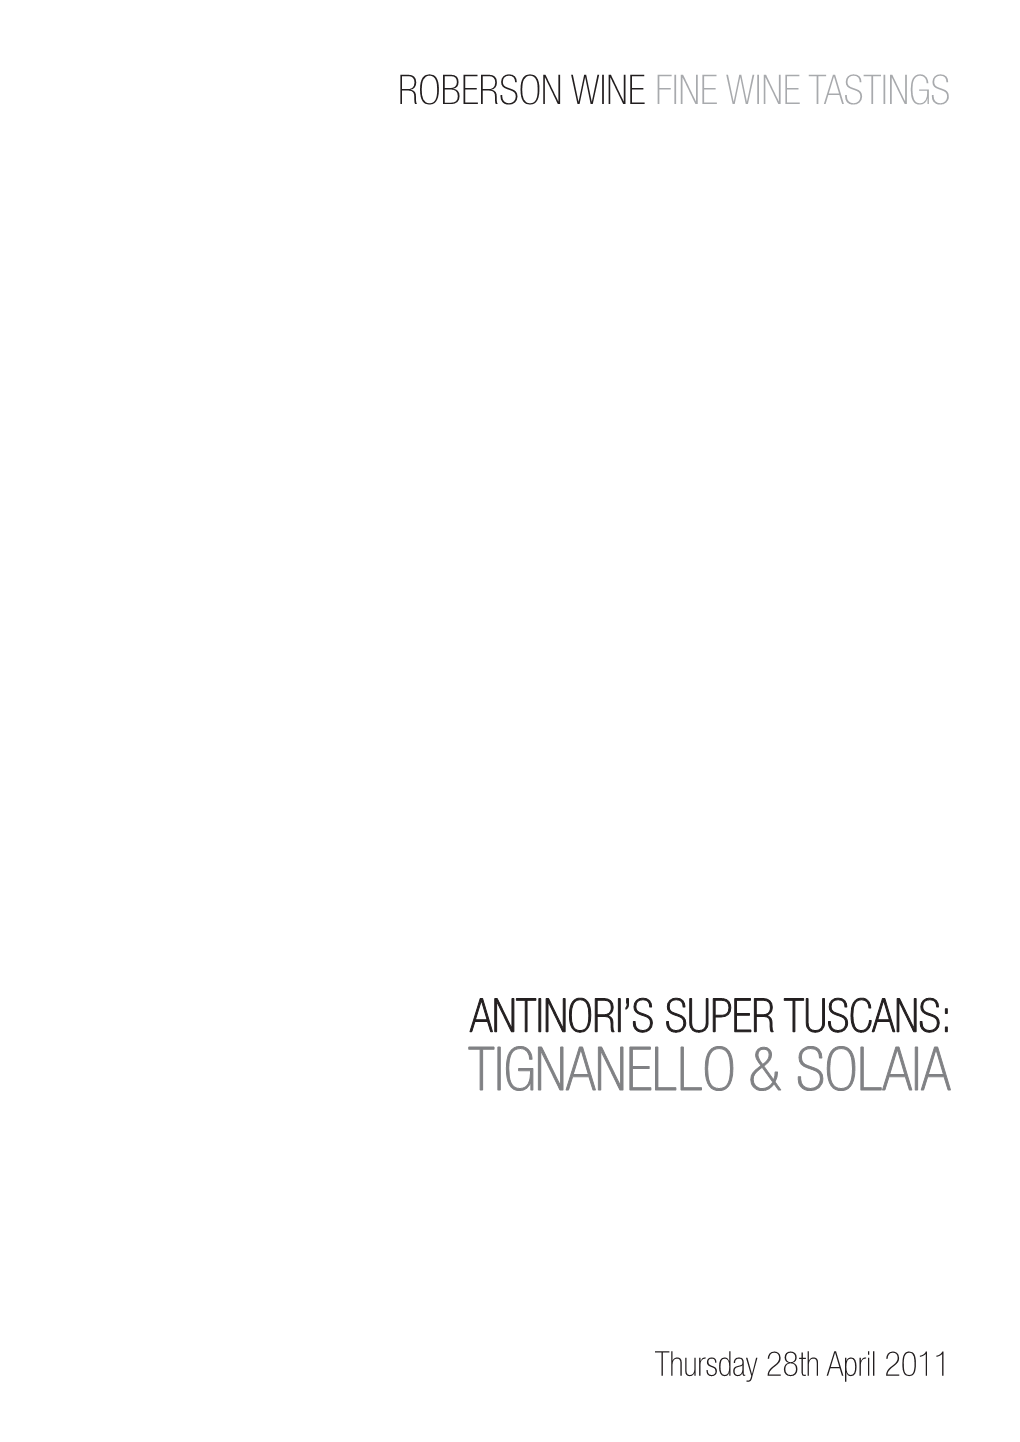 Antinori's Super Tuscans: Tignanello & Solaia